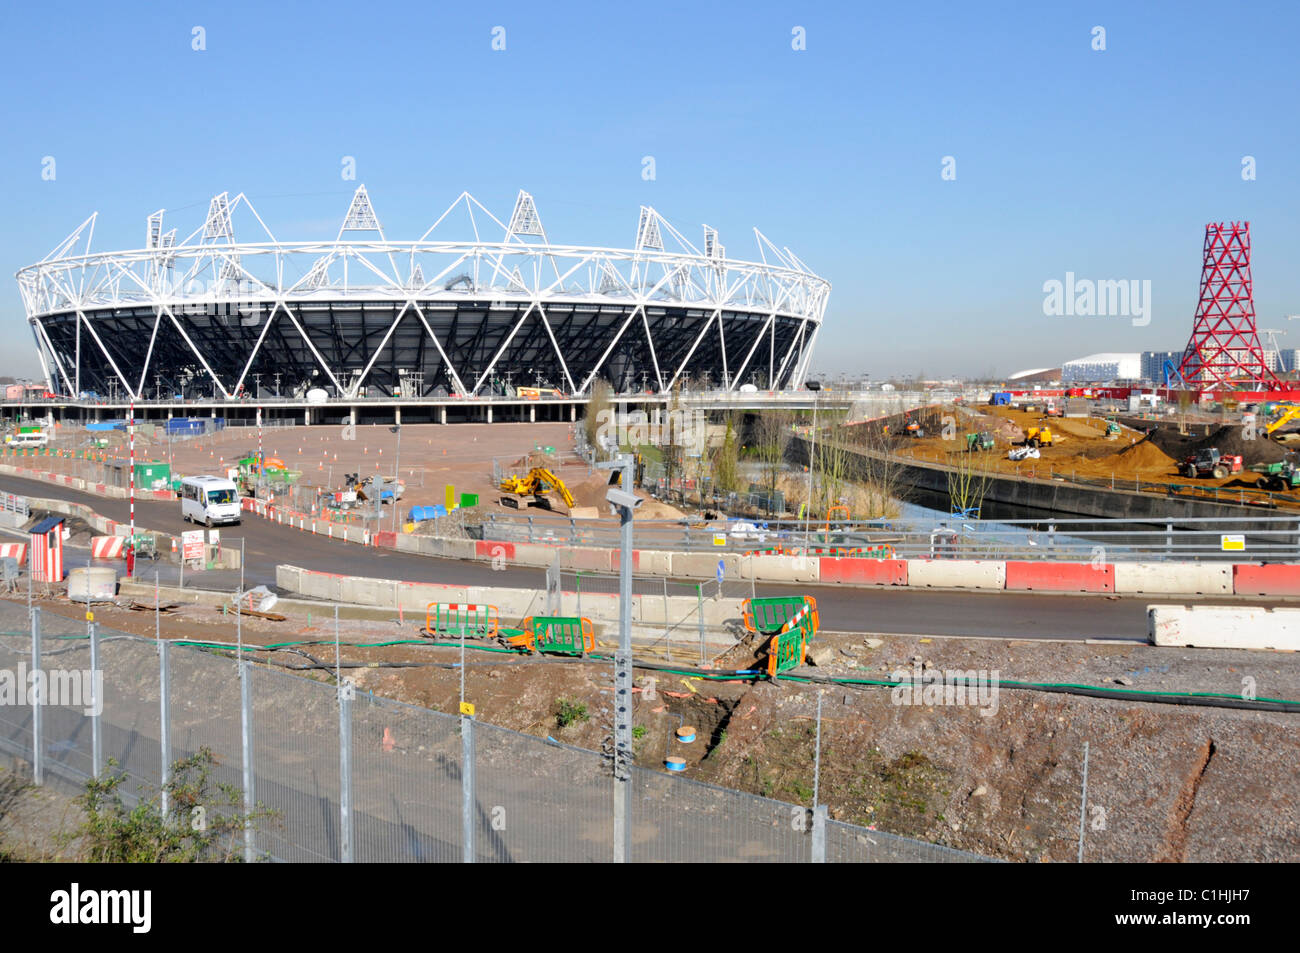 Construction de bâtiments travaux en cours Stade des Jeux olympiques et paralympiques de 2012 et tour de sculpture d'Anish Kapoor Orbit Londres Stratford Angleterre Royaume-Uni Banque D'Images